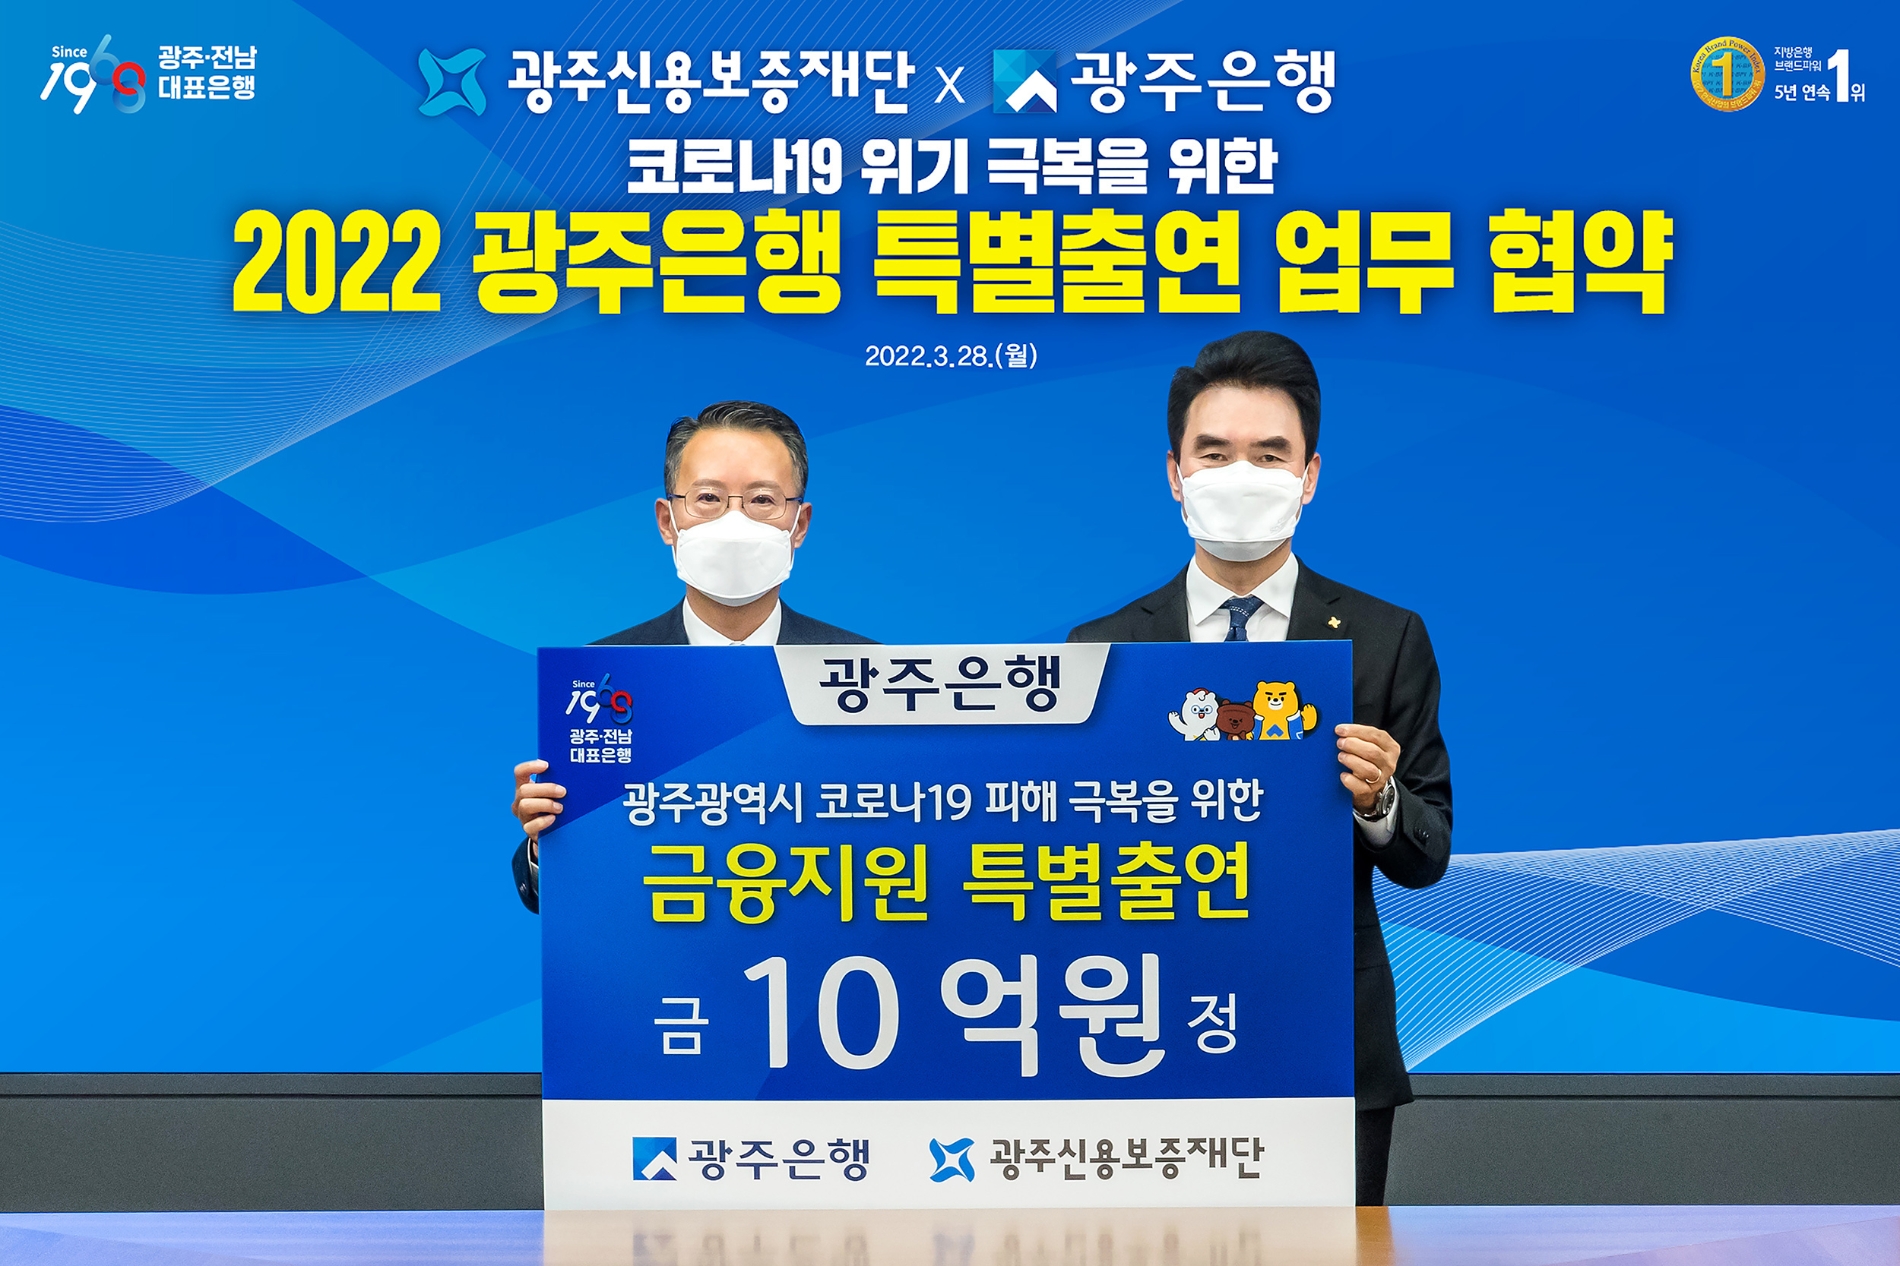 광주은행, 코로나19 피해업체 지원 위해 광주신용보증재단에 10억원 특별출연